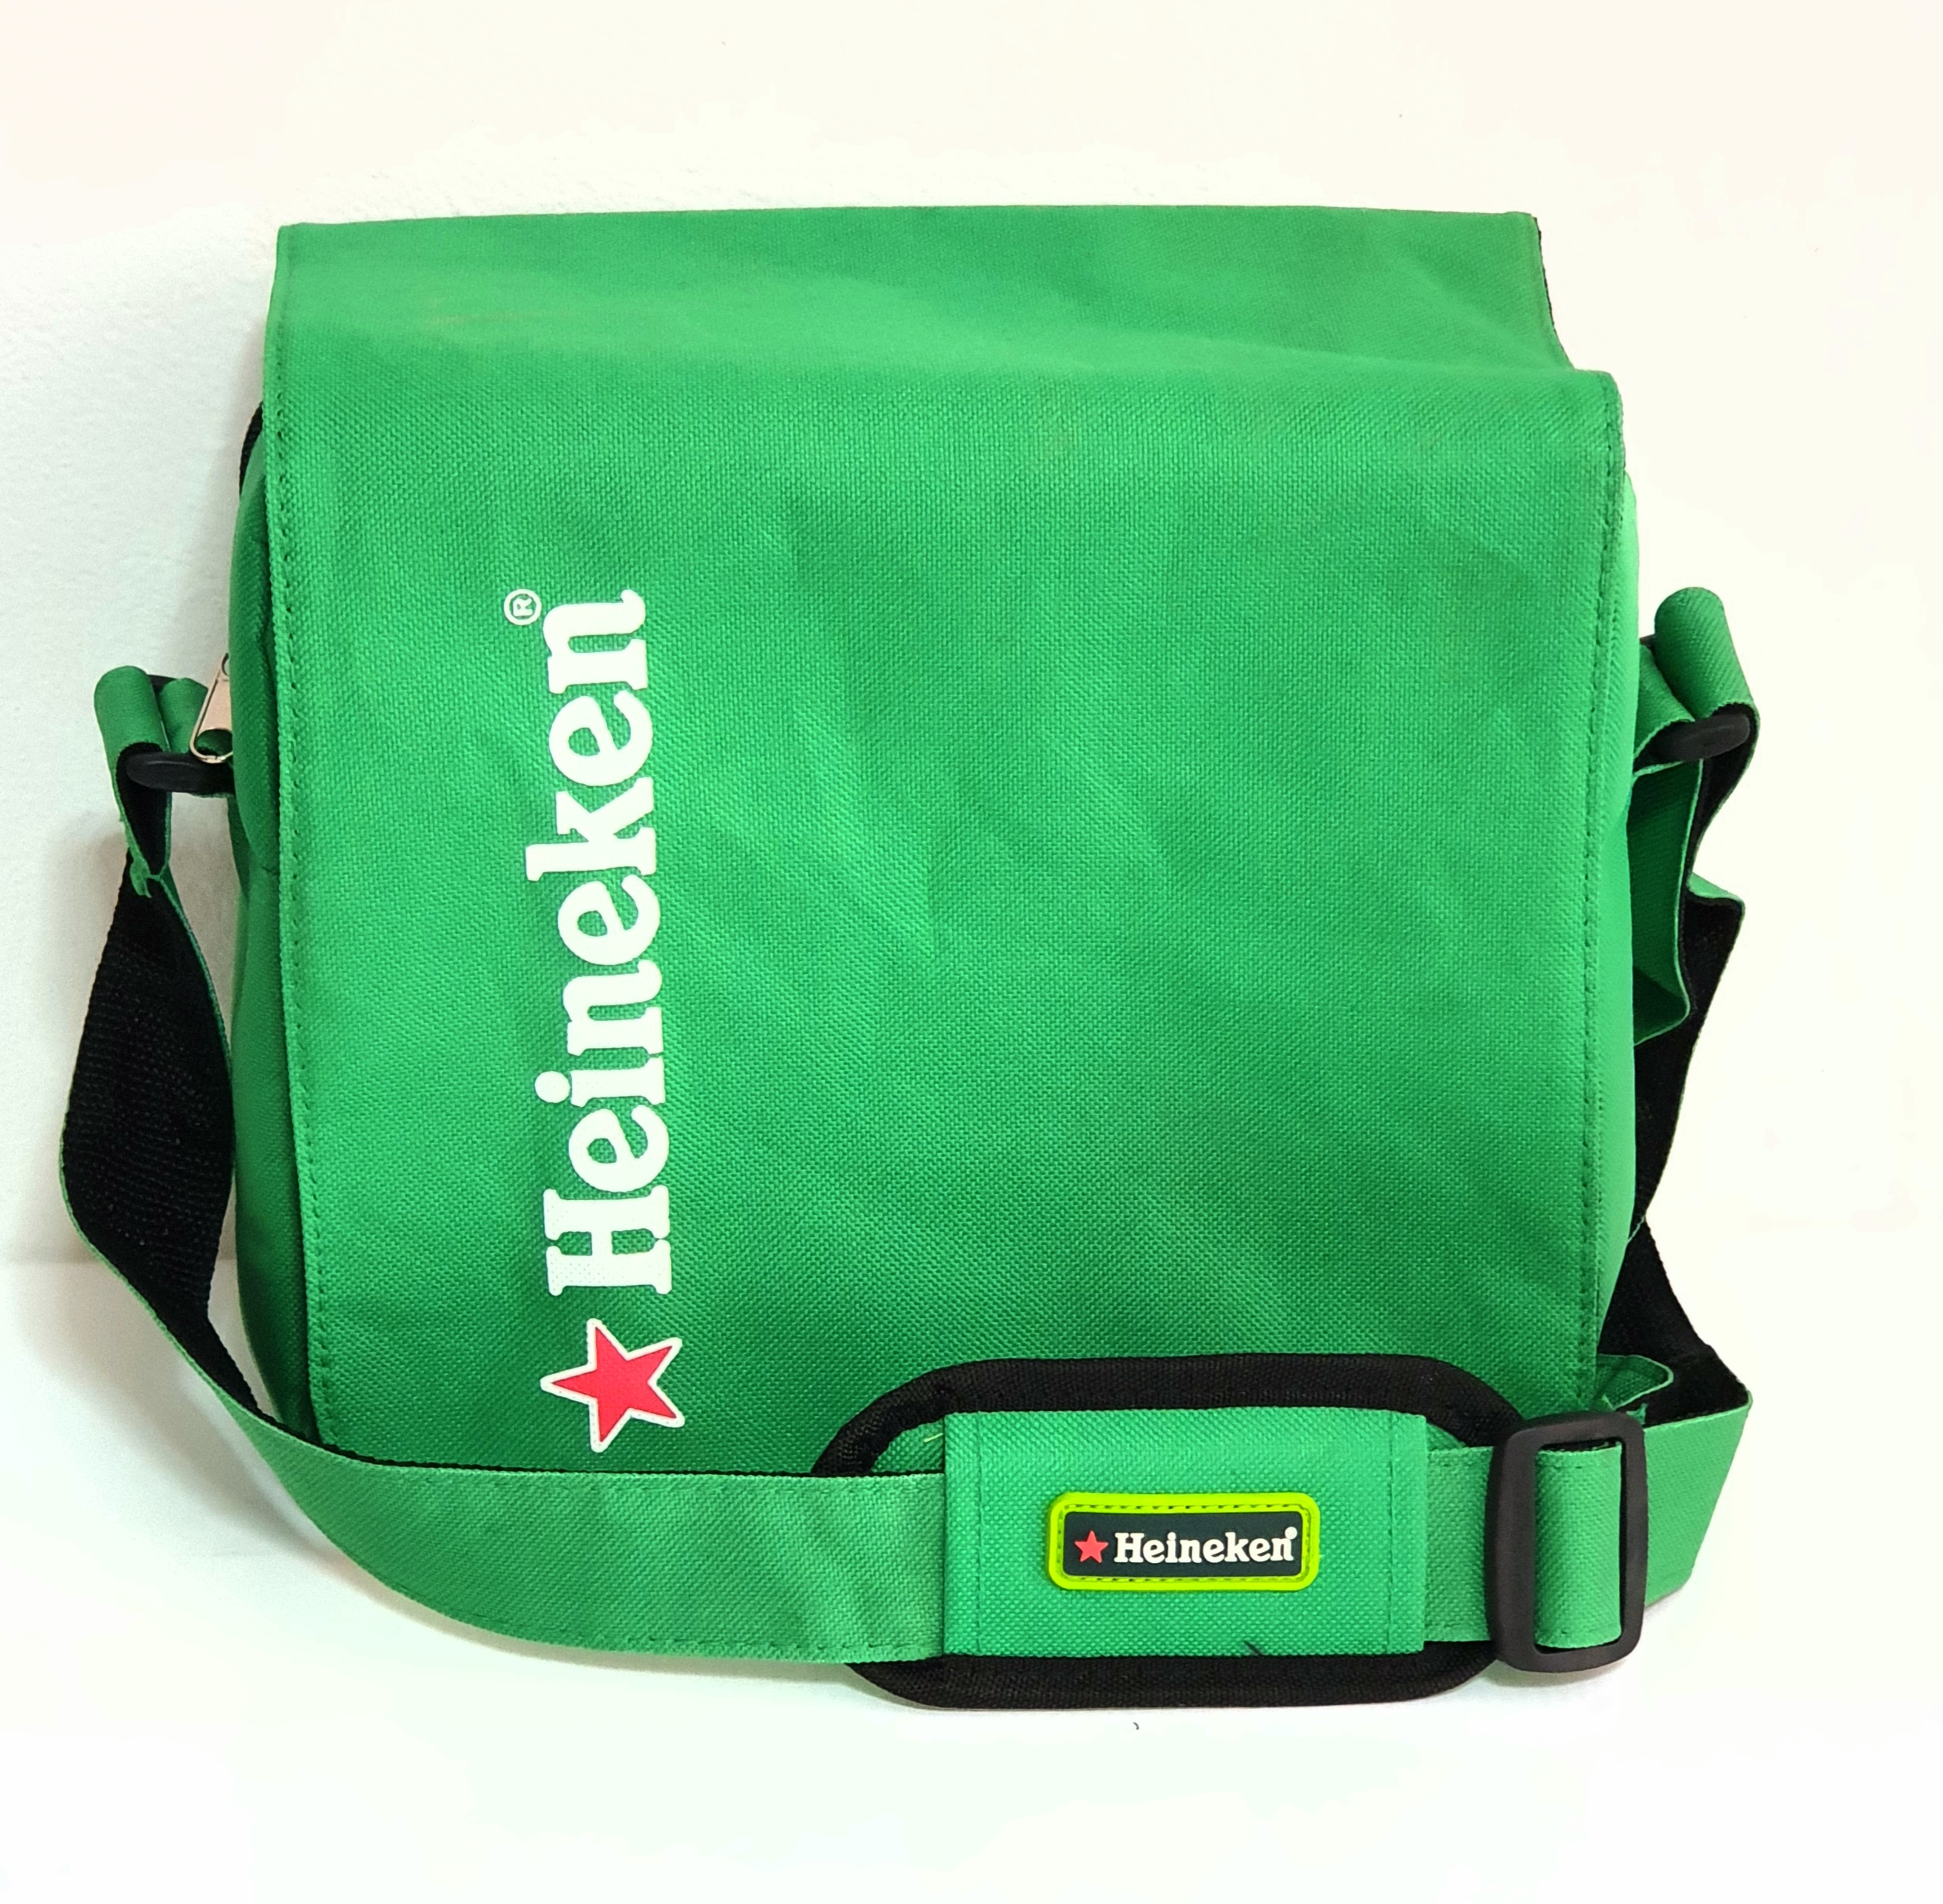 กระเป๋าเก็บความเย็น/เก็บอุณหภูมิ Heineken